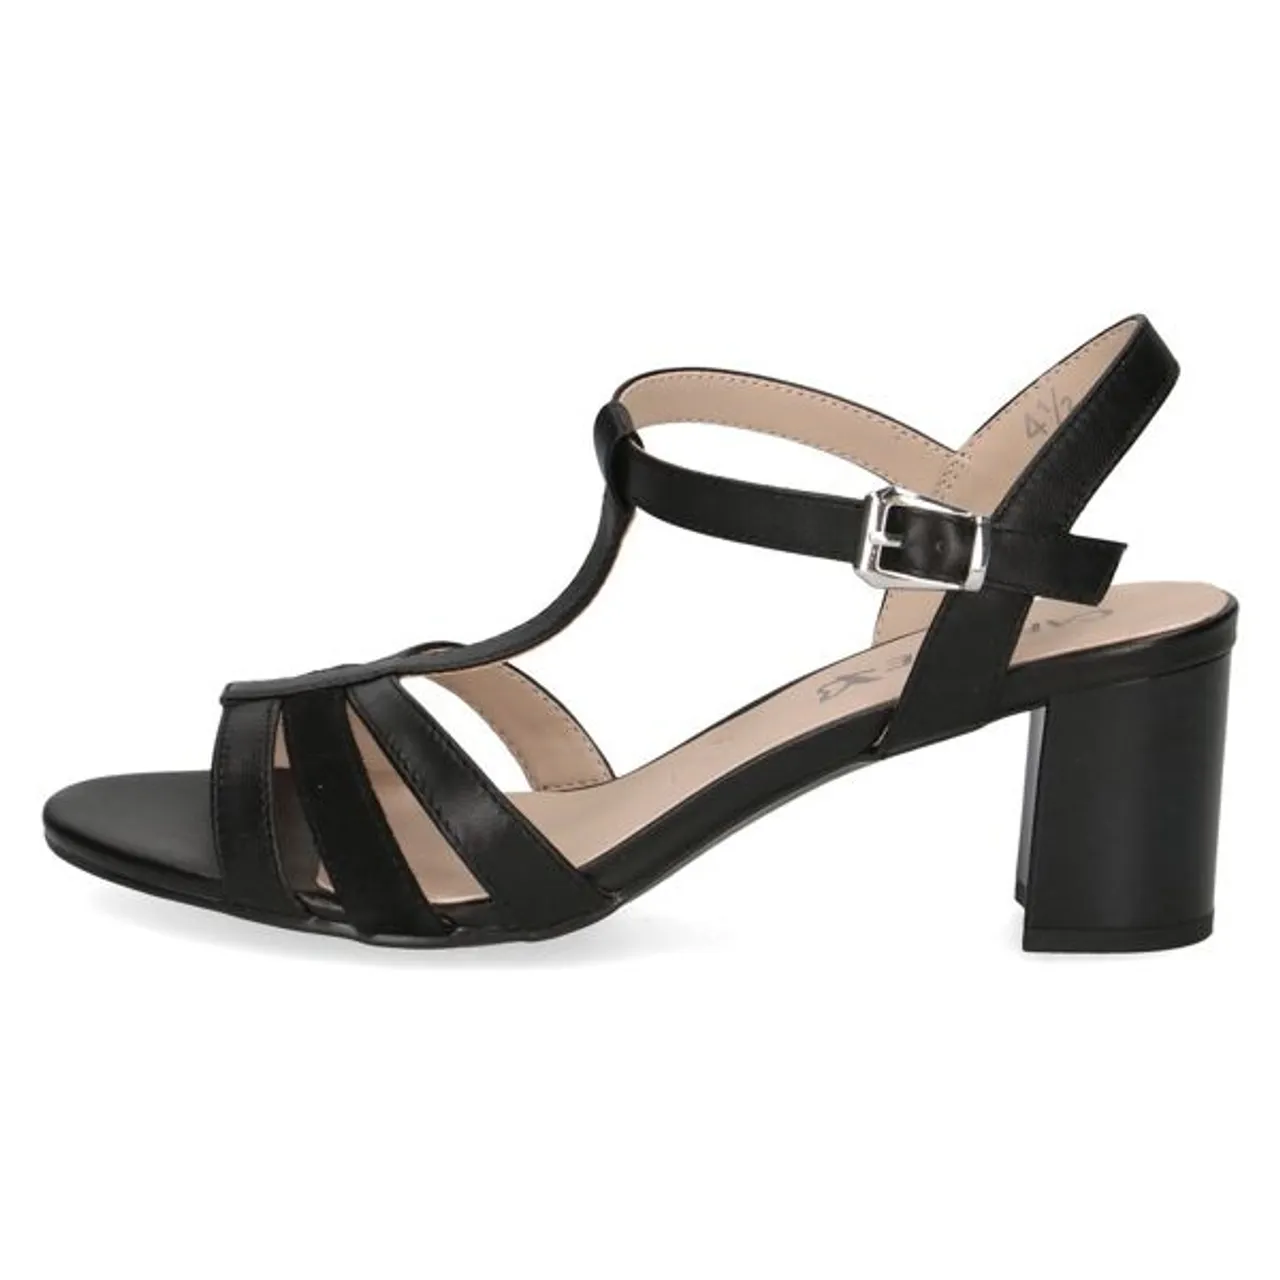 Sandalette CAPRICE Gr. 38, schwarz Damen Schuhe Sandaletten Sommerschuh, Riemchensandalette, Blockabsatz, mit Memory Foam